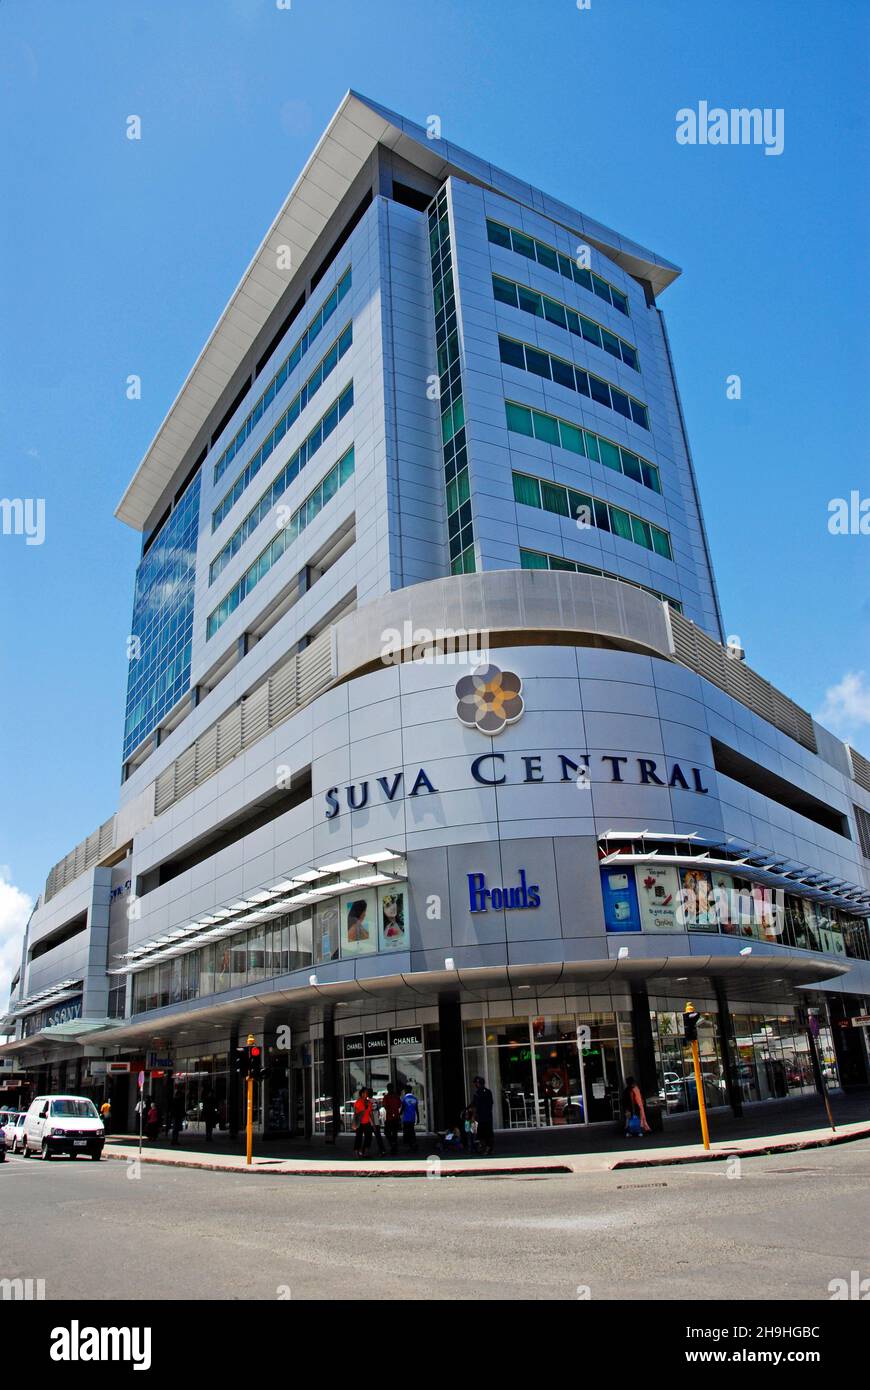 Suva central building, Suva city, Fijii Stock Photo